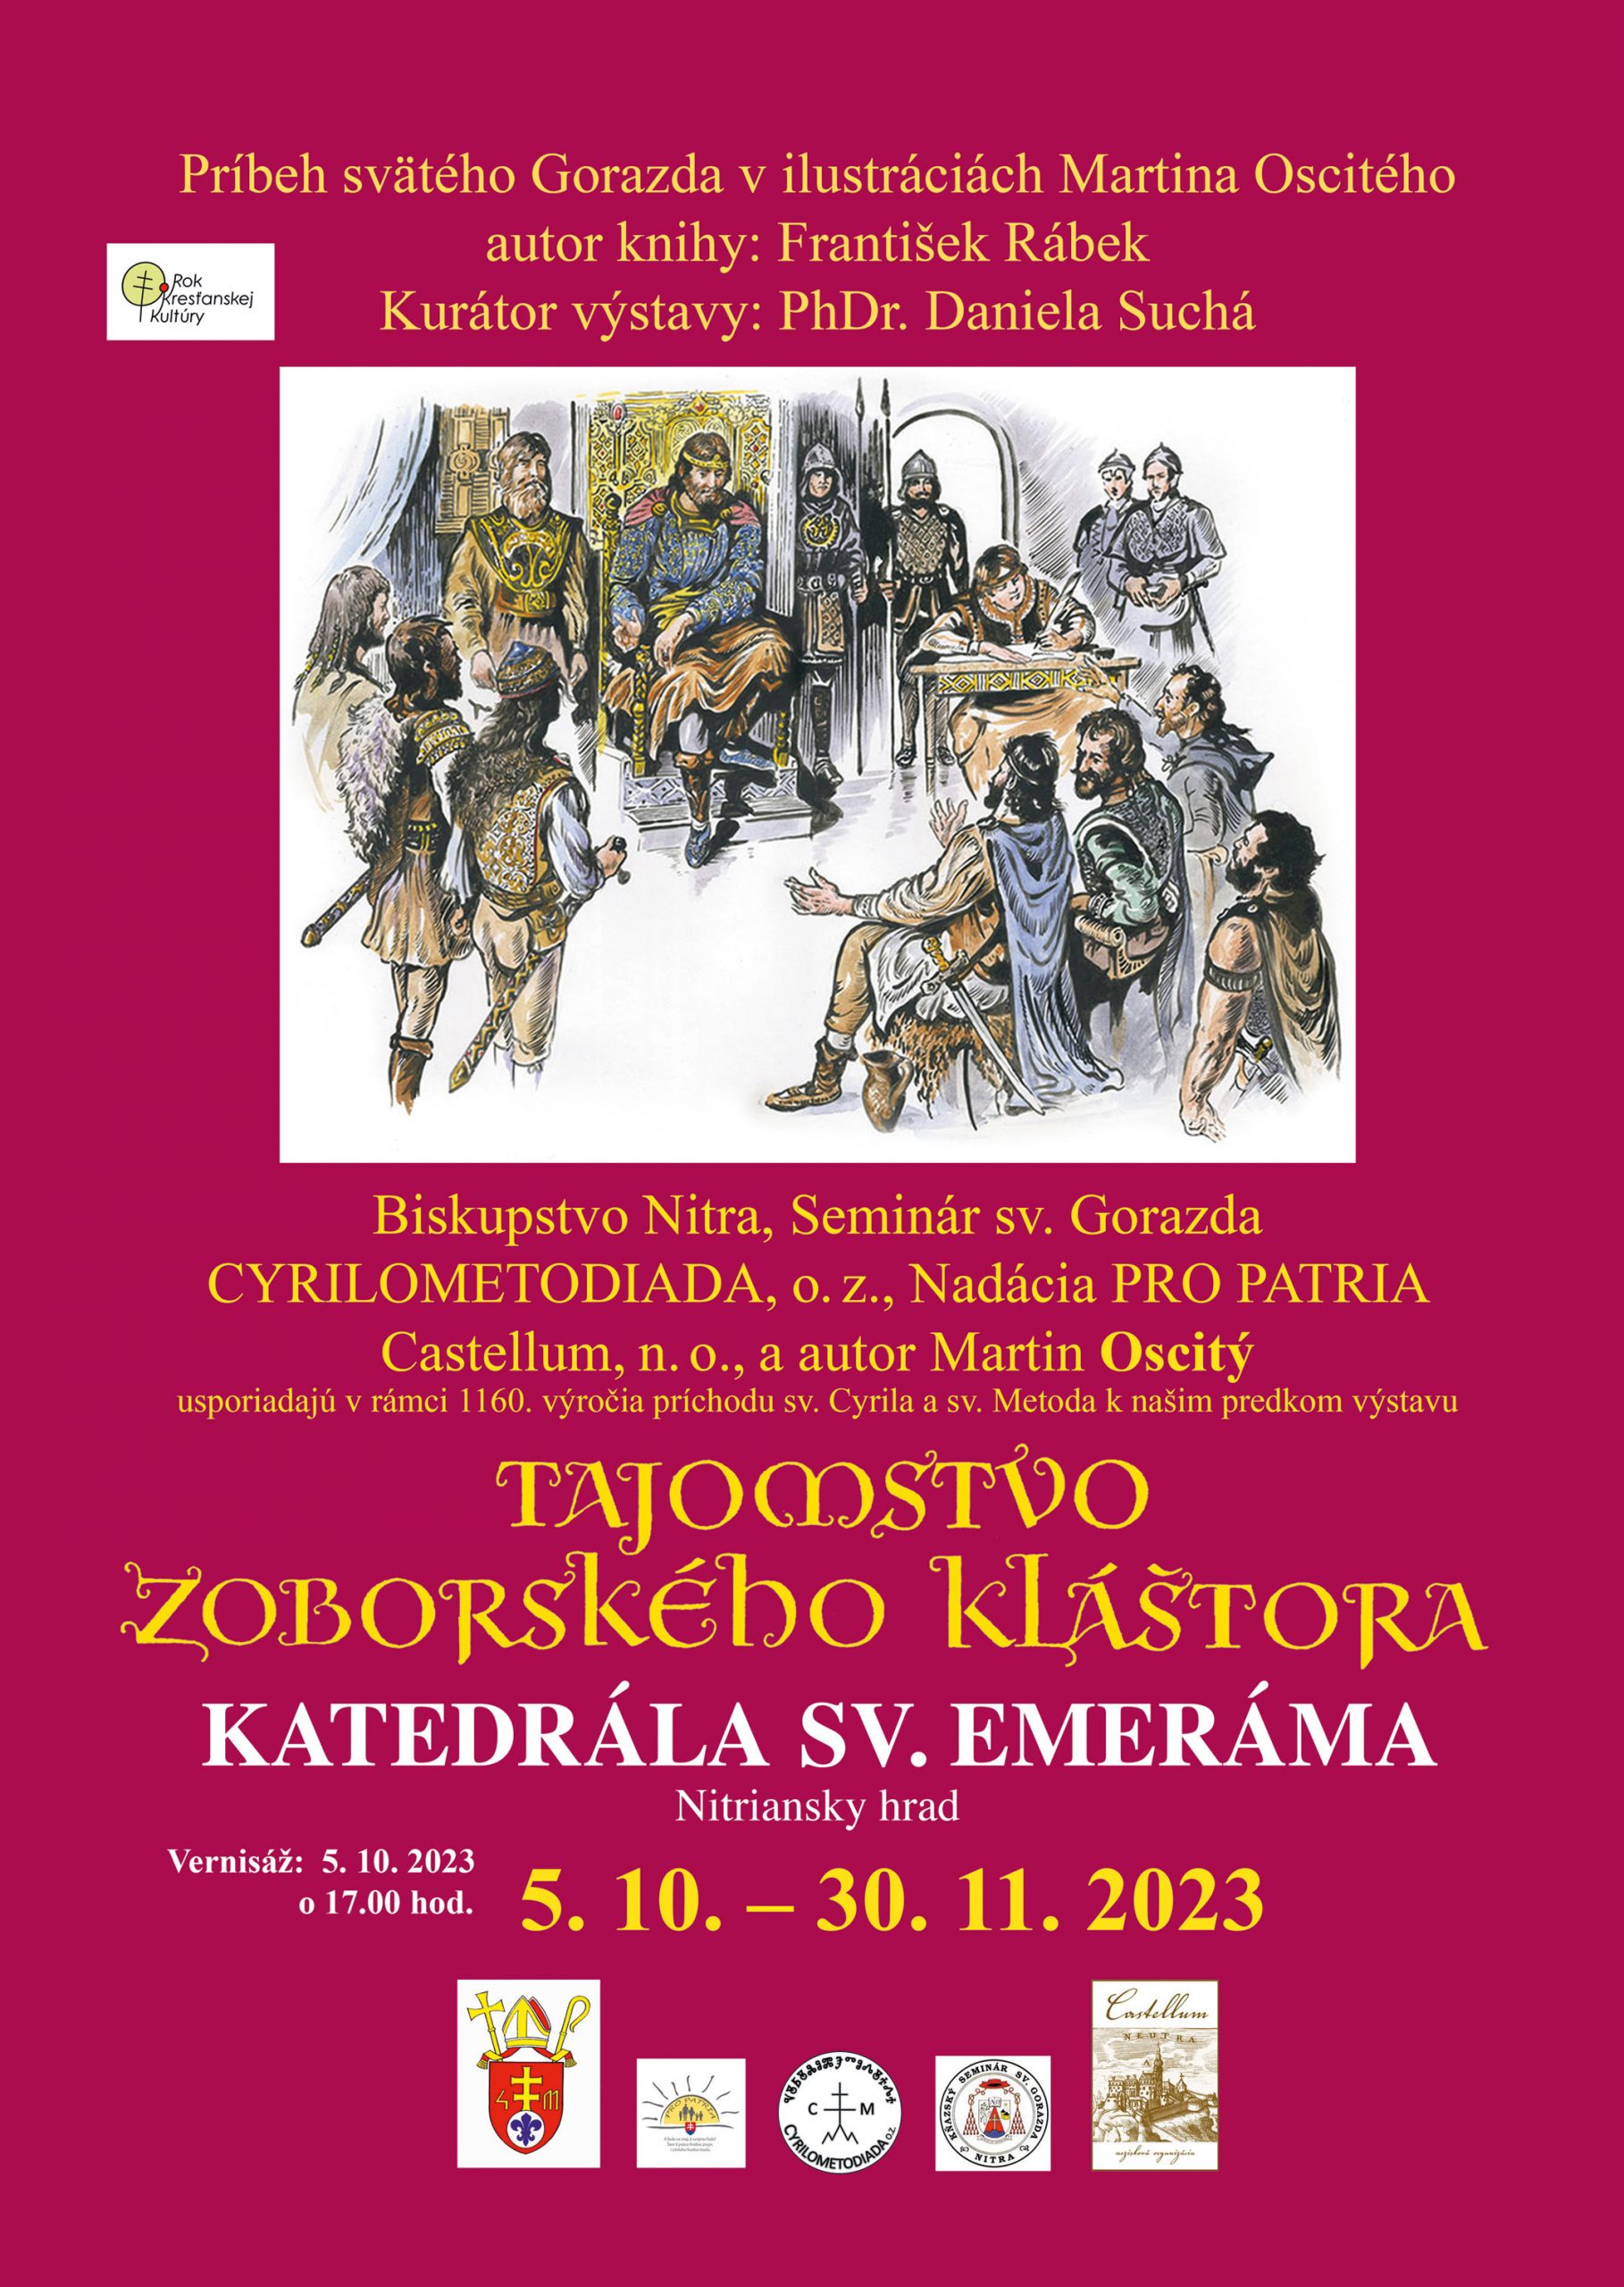 Vernisáž výstavy Tajomstvo Zoborského kláštora v ilustráciách Martina Oscitého na Nitrianskom hrade